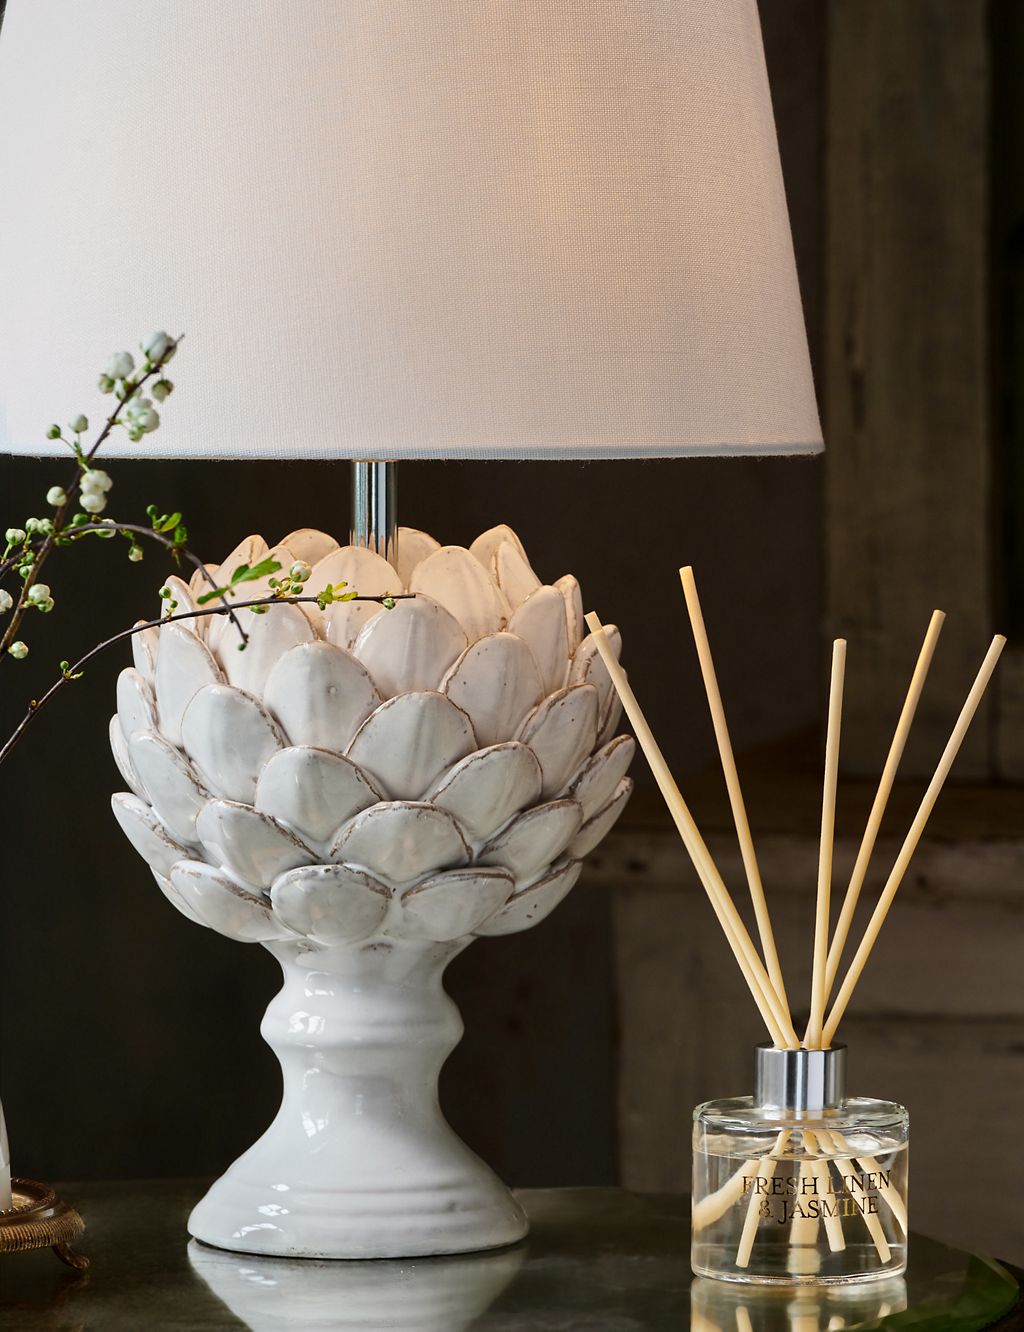 Ceramic Artichoke Table Lamp 1 of 4